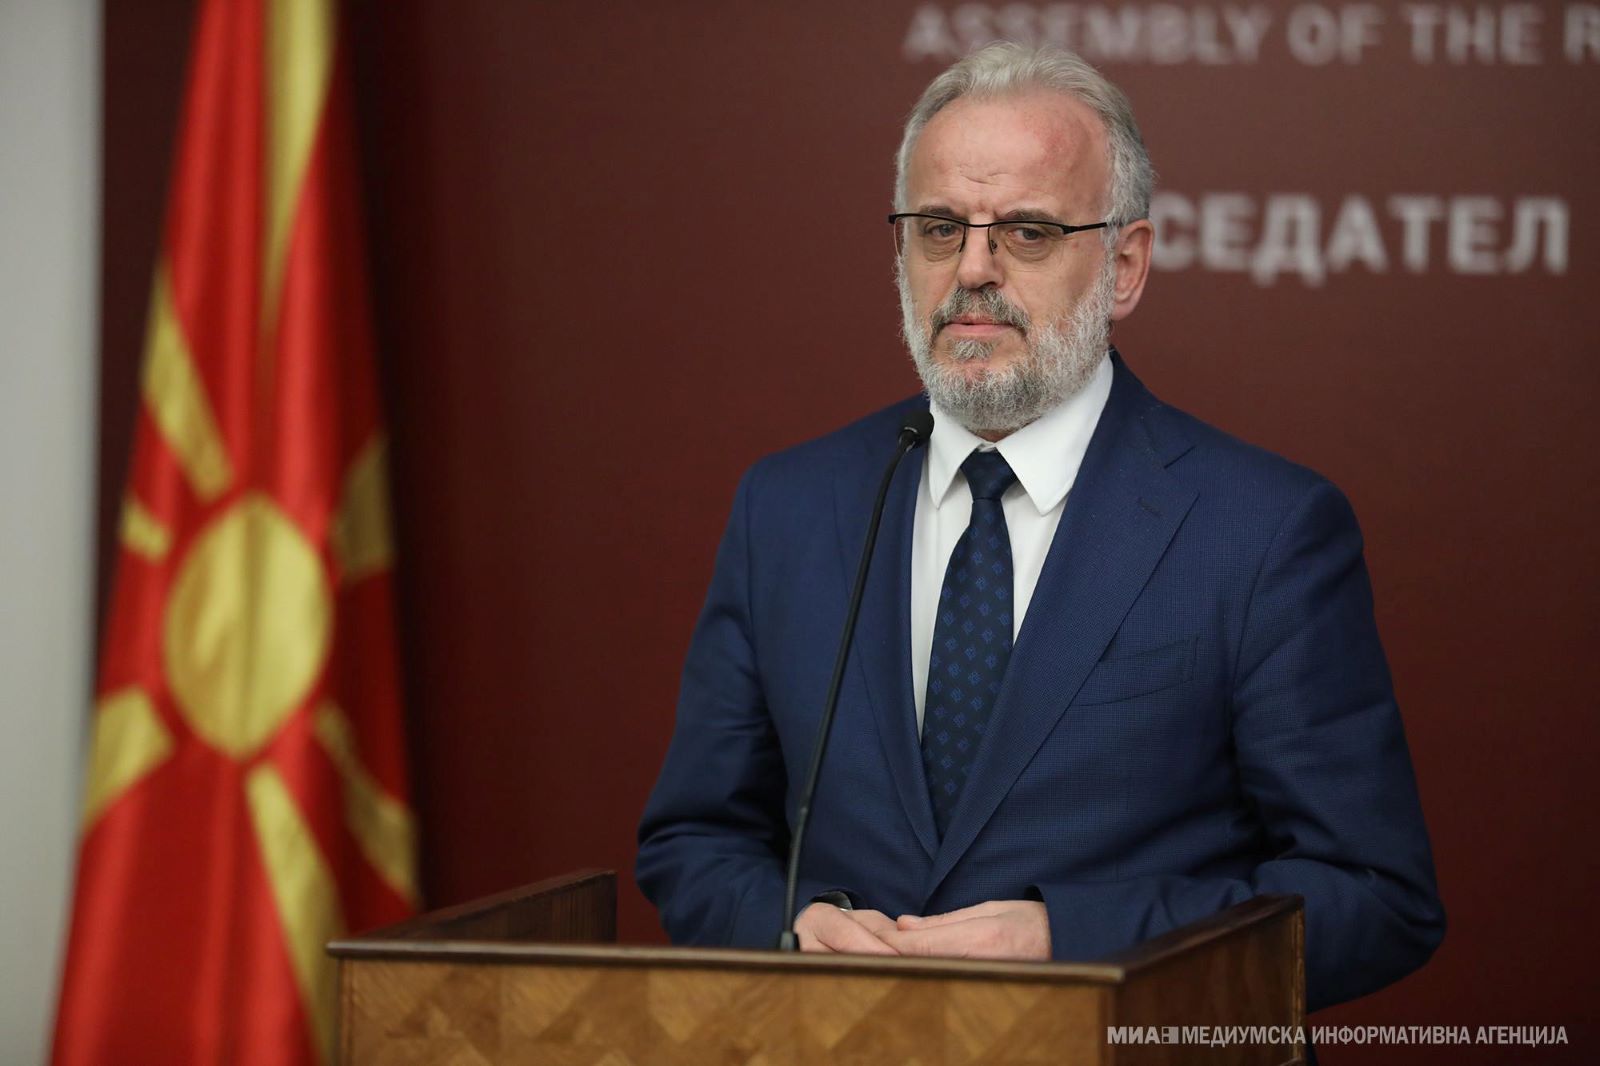 Βόρεια Μακεδονία: Ο Ταλάτ Τζαφέρι έλαβε εντολή σχηματισμού υπηρεσιακής κυβέρνησης